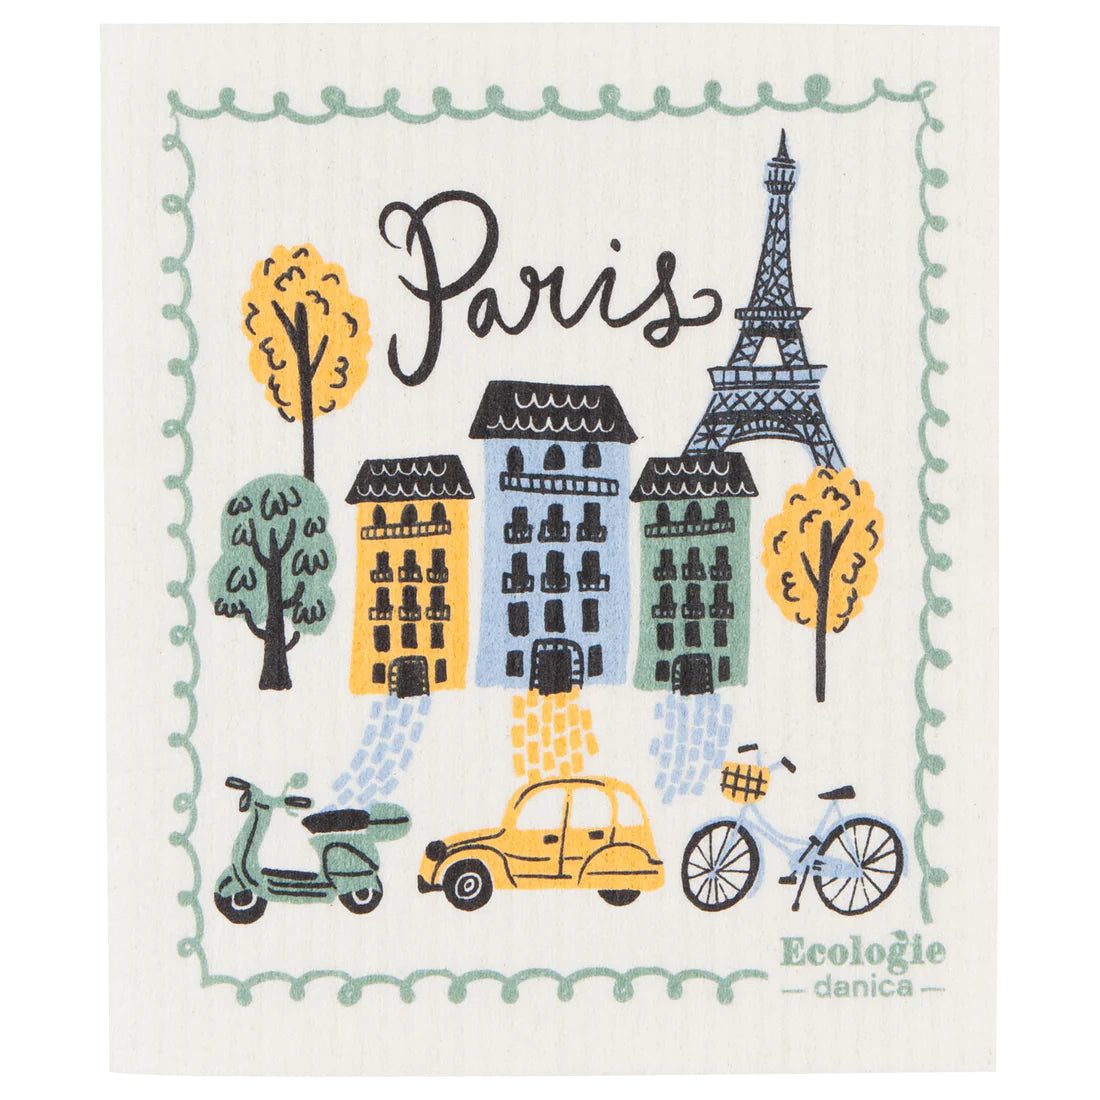 Swedish Dishcloth - Meet Me In Paris